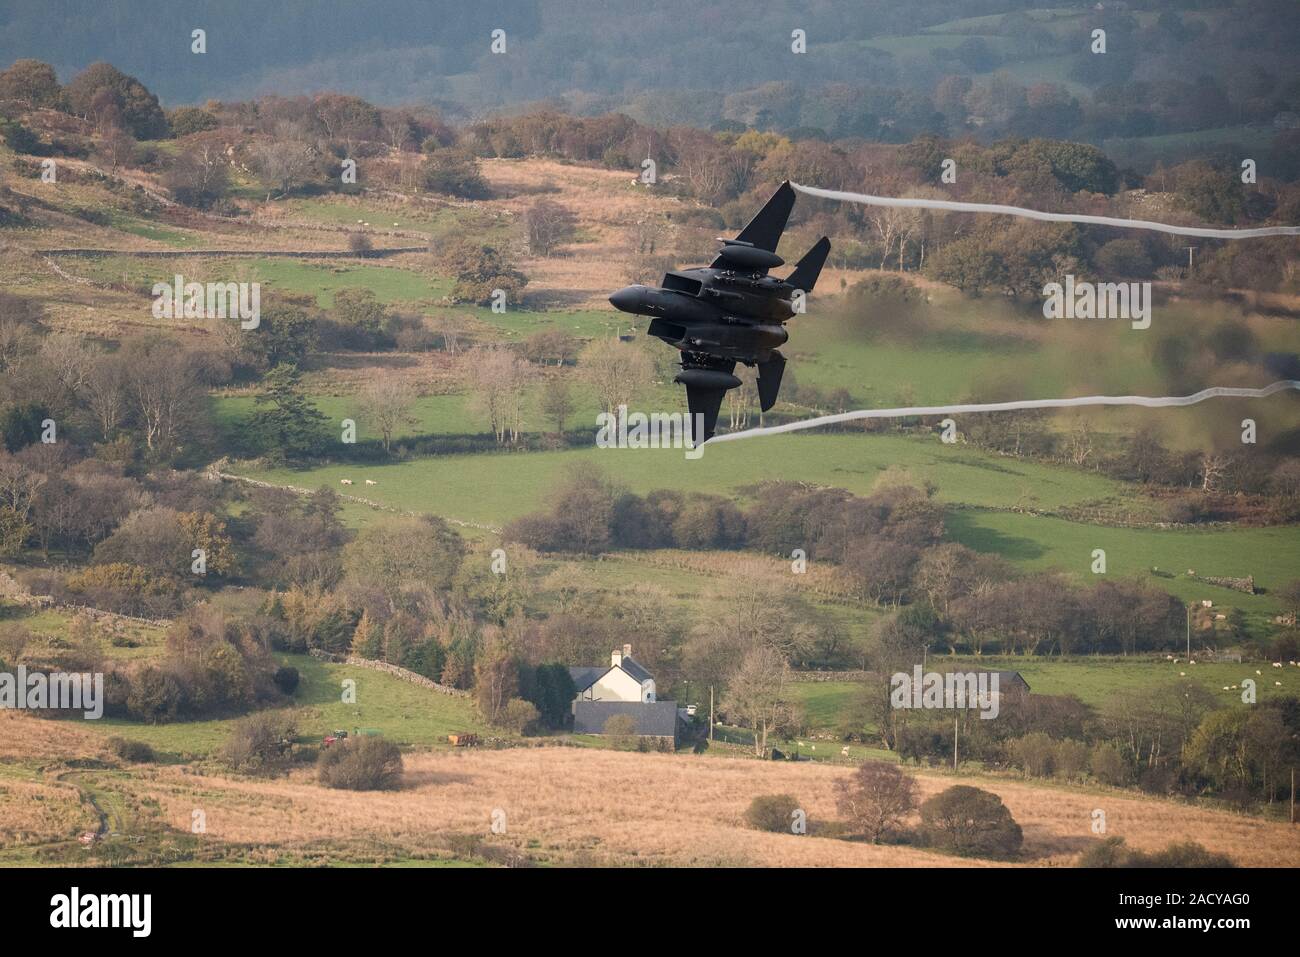 F-15 Eagle, USAF Mc Donnell Douglas avion de chasse de bas niveau qui vole de Valley Anglesey à travers la boucle Mach à Cadair Idris Pays de Galles Banque D'Images